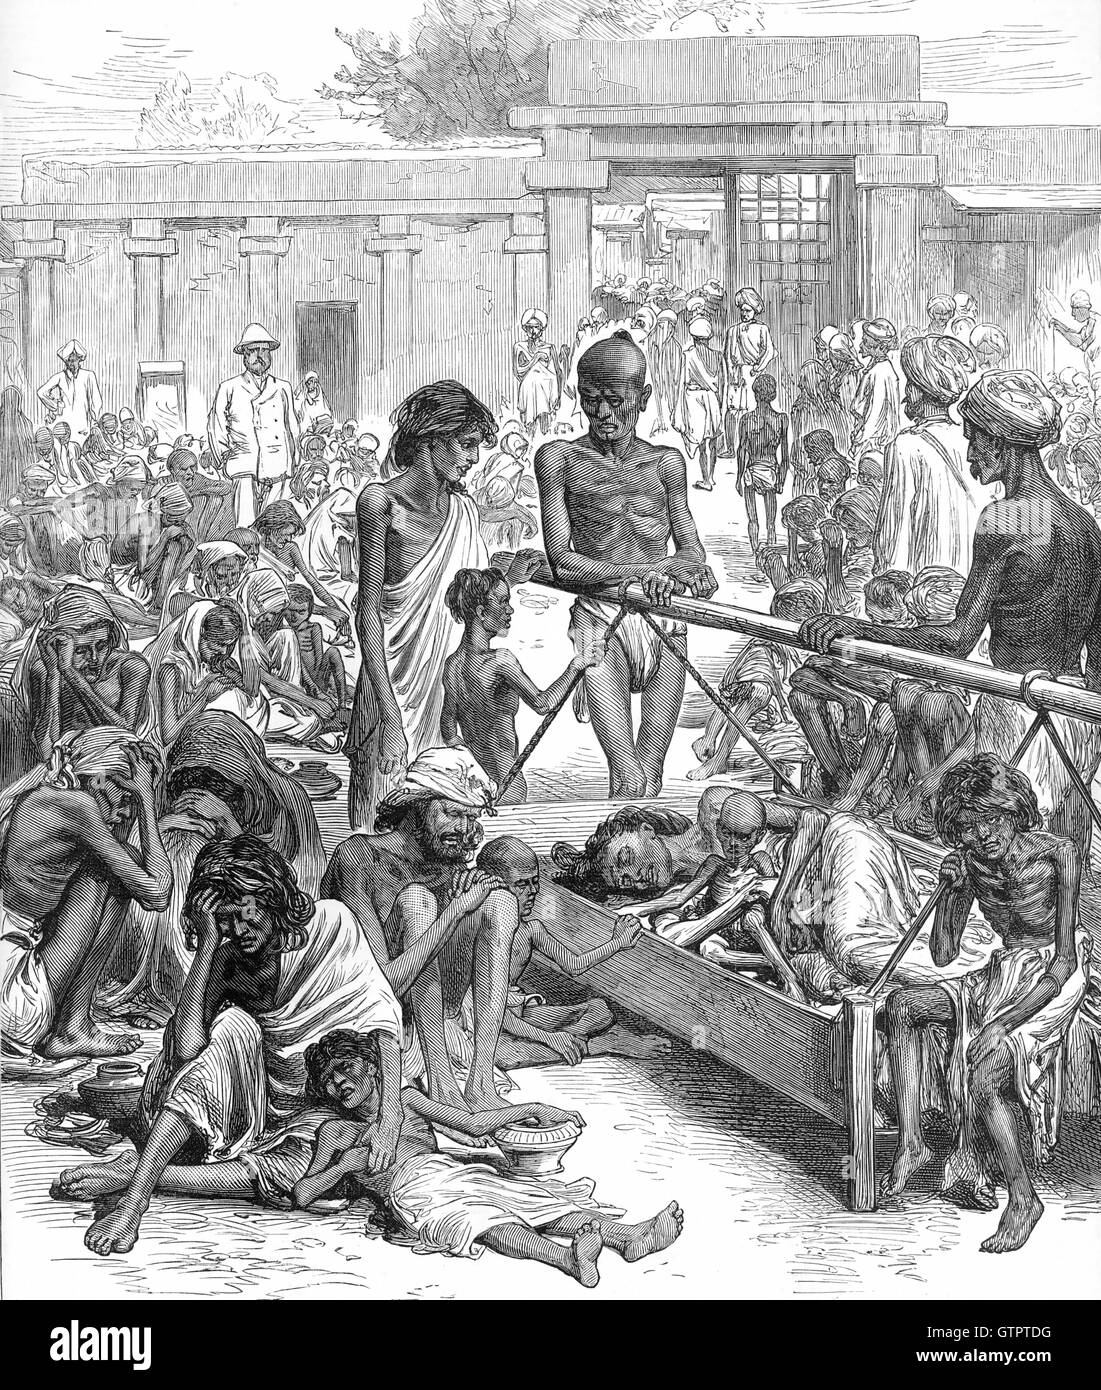 MADRAS CARESTIA 1877 Incisione dall'Illustrated London News 20 ottobre 1877 che mostra le persone in attesa di soccorsi a Bangalore Foto Stock